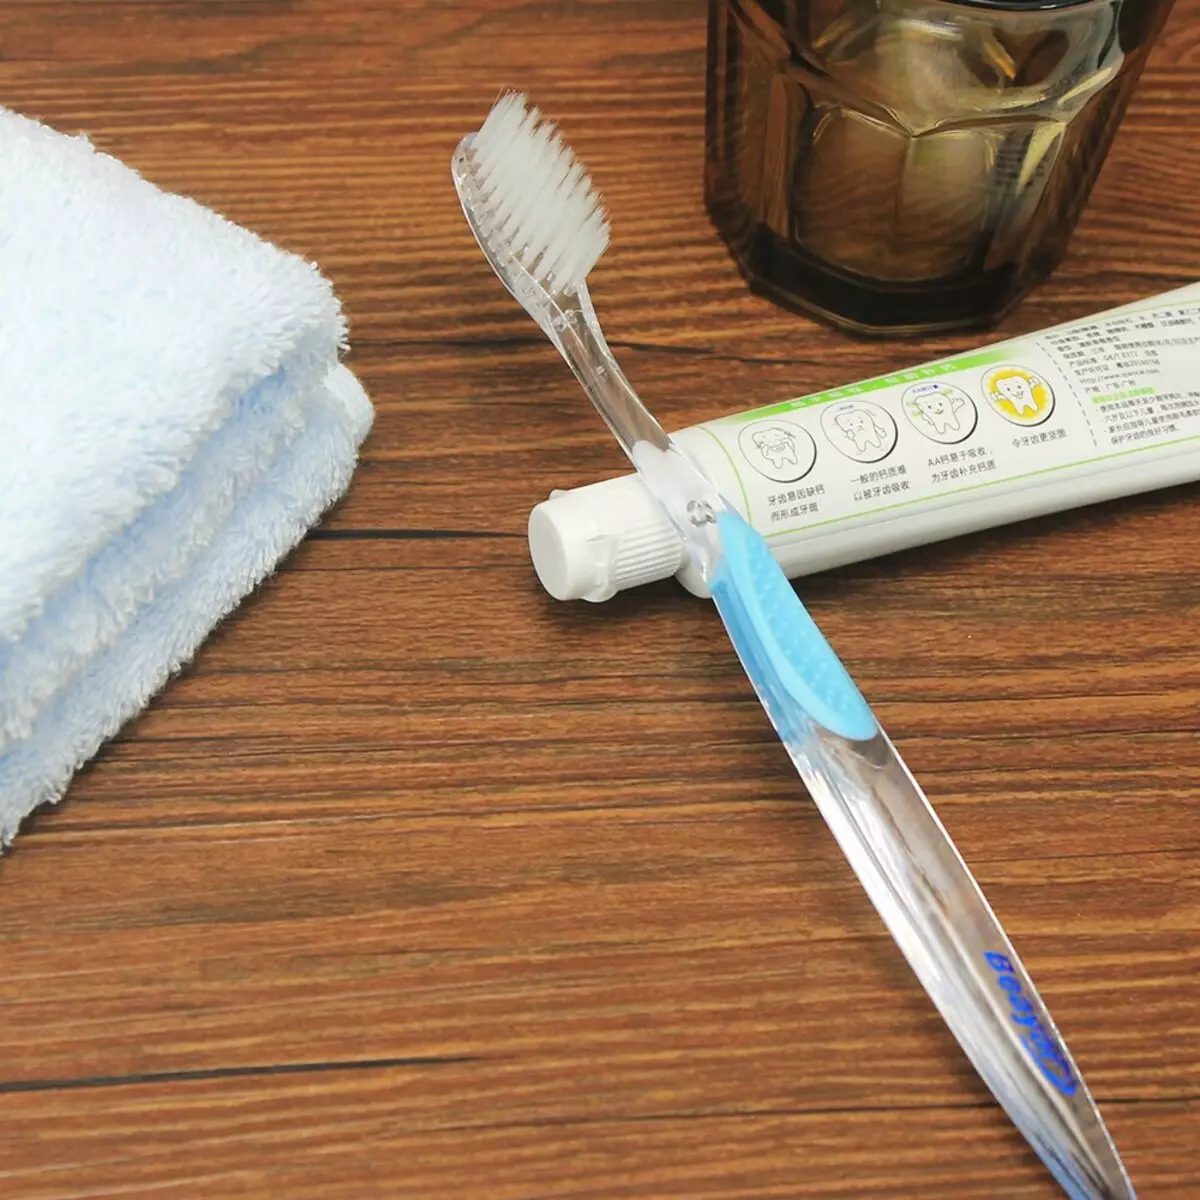 فرشاة الأسنان: أفضل فرشاة للأسنان والخيزران والأيونية، وكيفية اختيار، يدوي والمتأكد، الأنواع الأخرى 24014_32